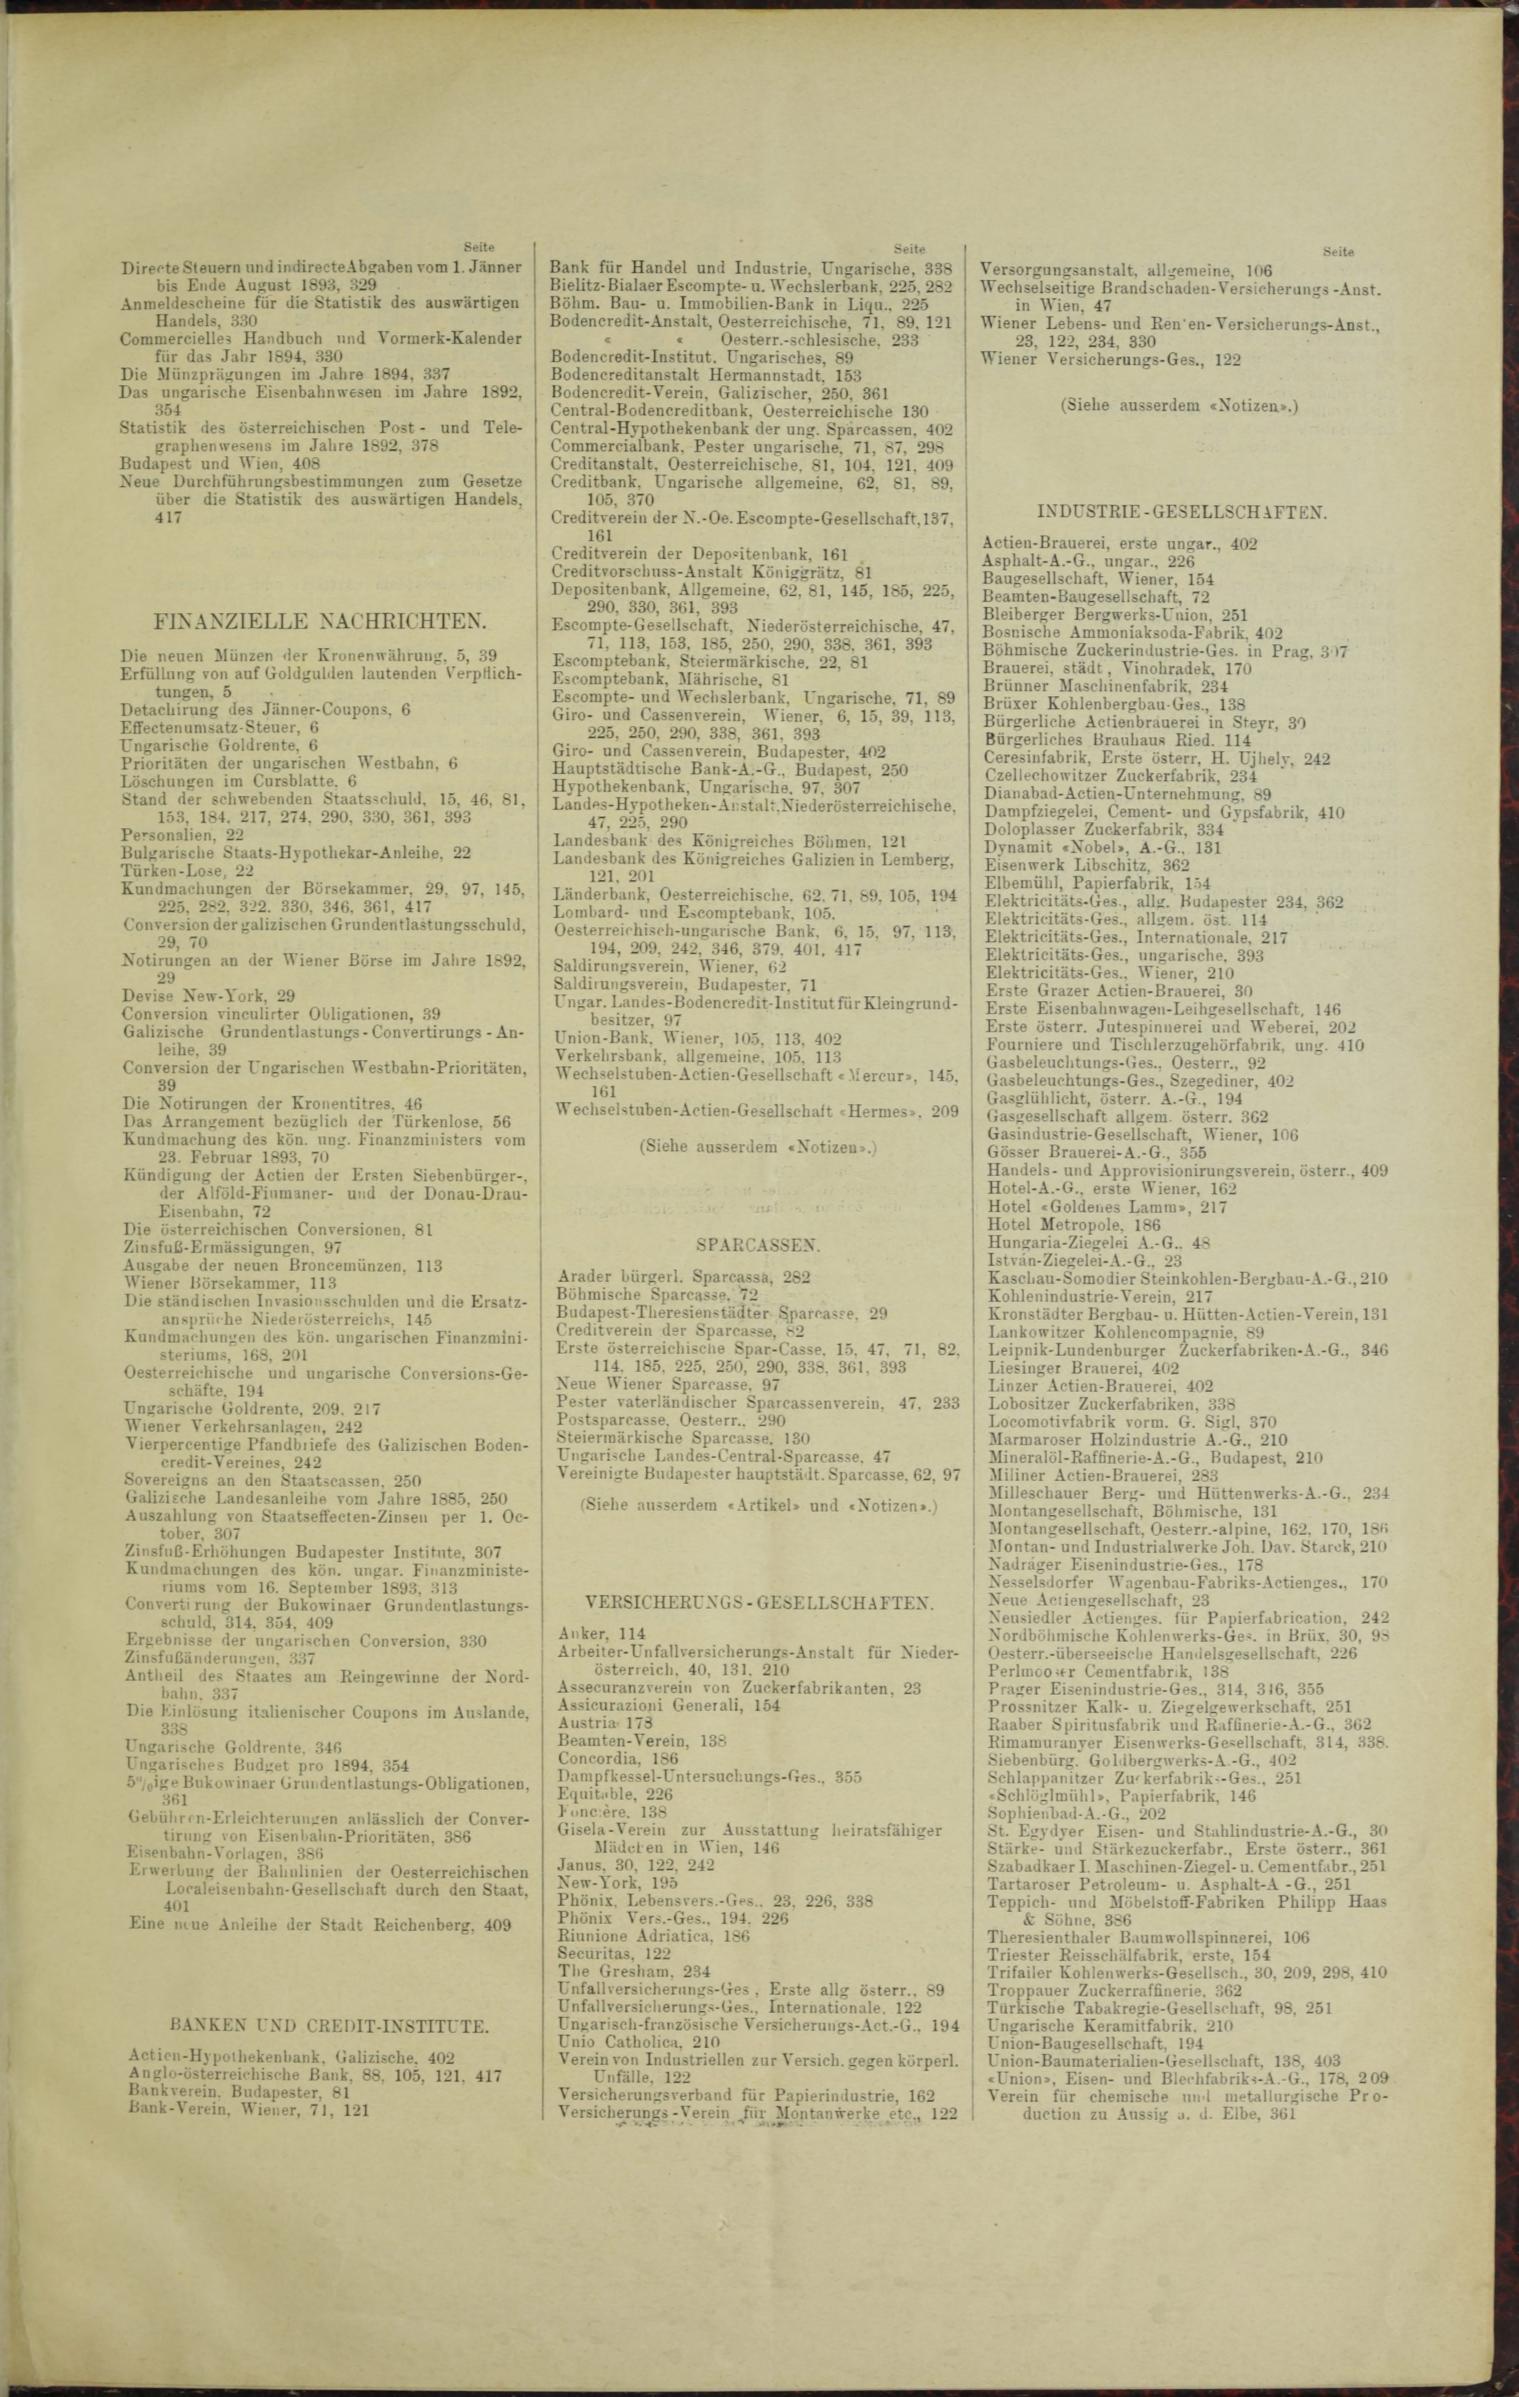 Der Tresor 25.05.1893 - Seite 11